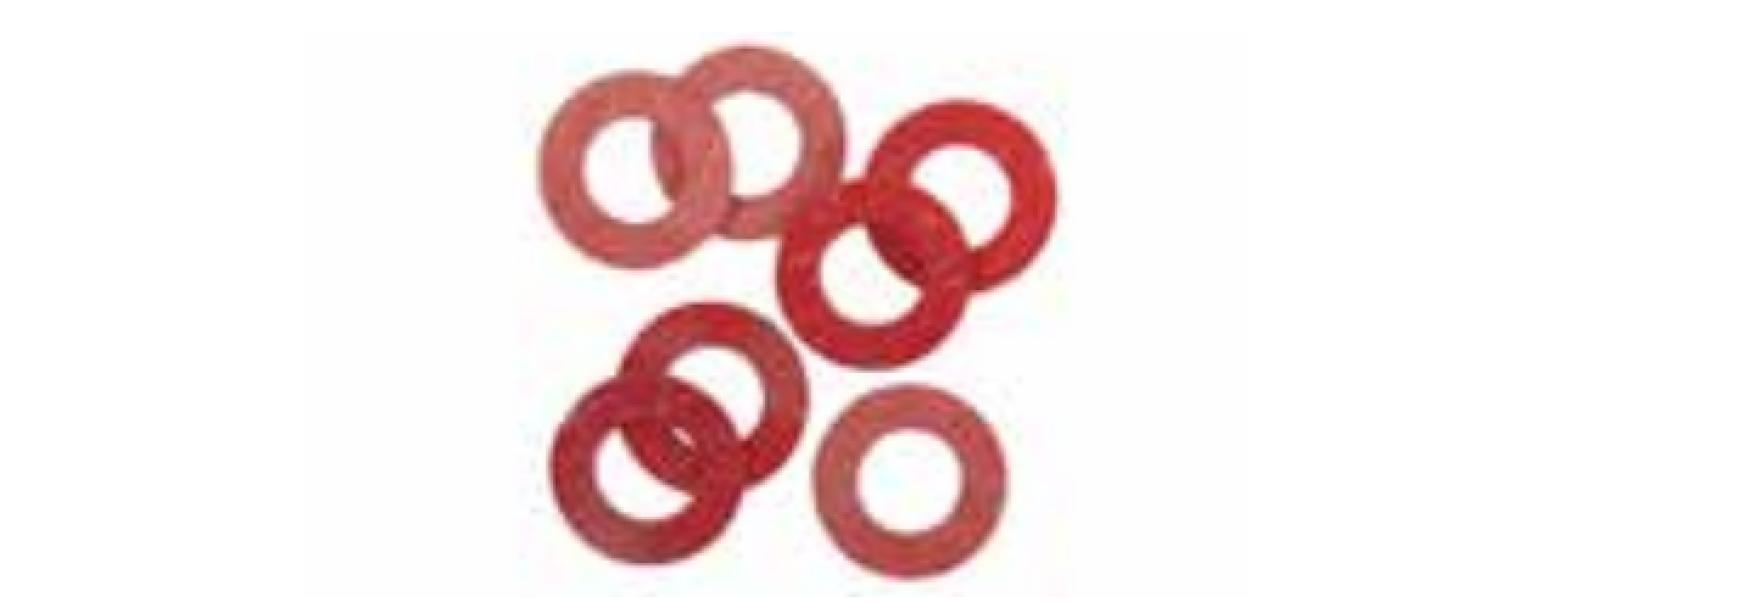 Guarnizioni  Idro Bric in fibra diametro 3/8 pollici - P0443 A 01